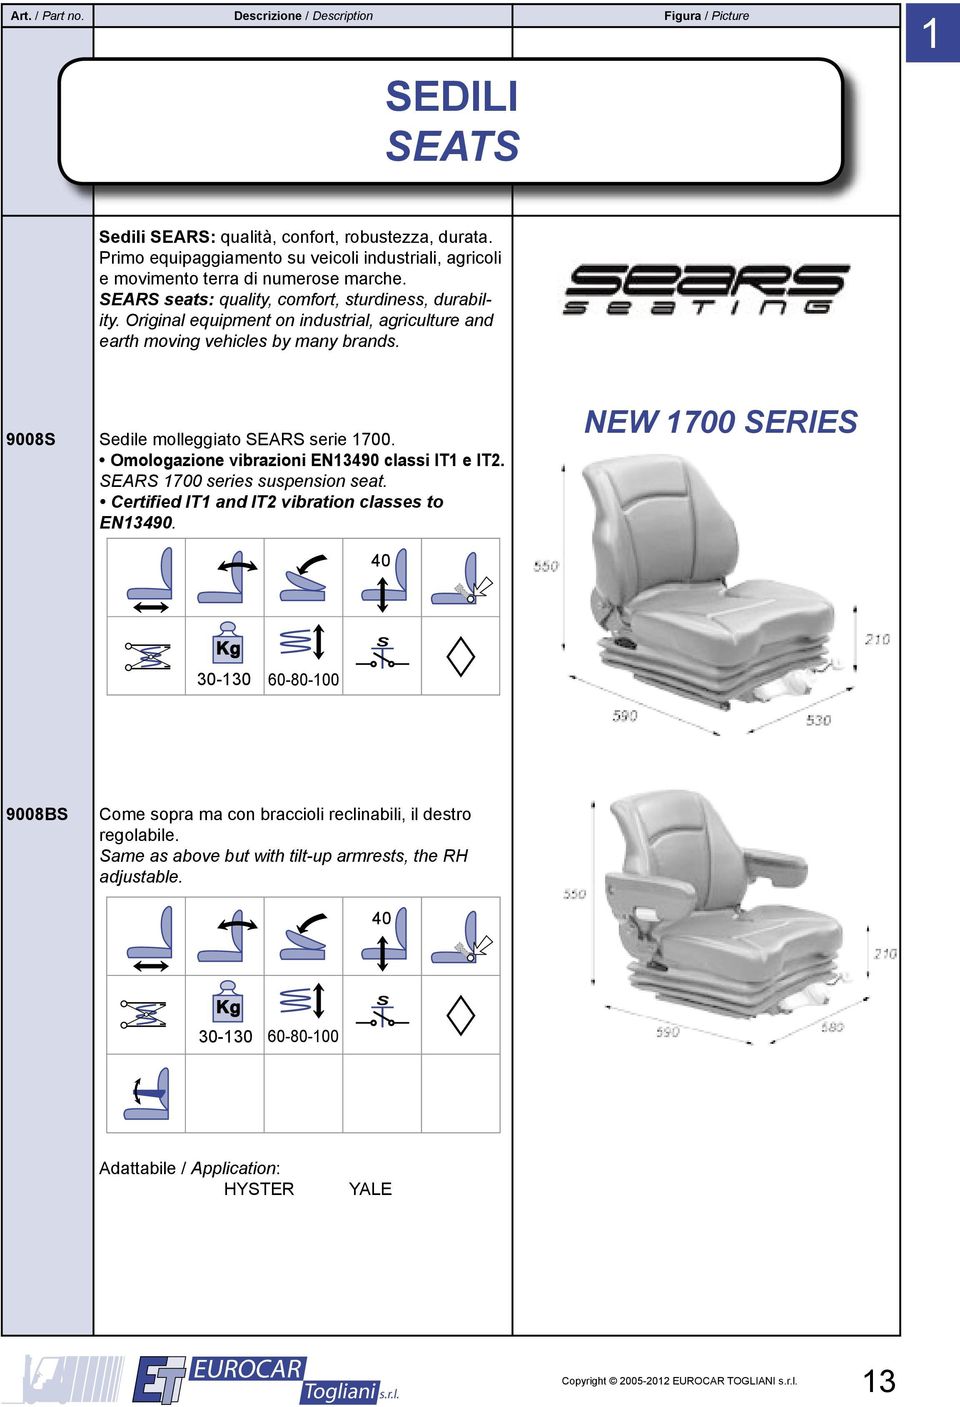 9008S Sedile molleggiato SEARS serie 1700. Omologazione vibrazioni EN13490 classi IT1 e IT2. SEARS 1700 series suspension seat.